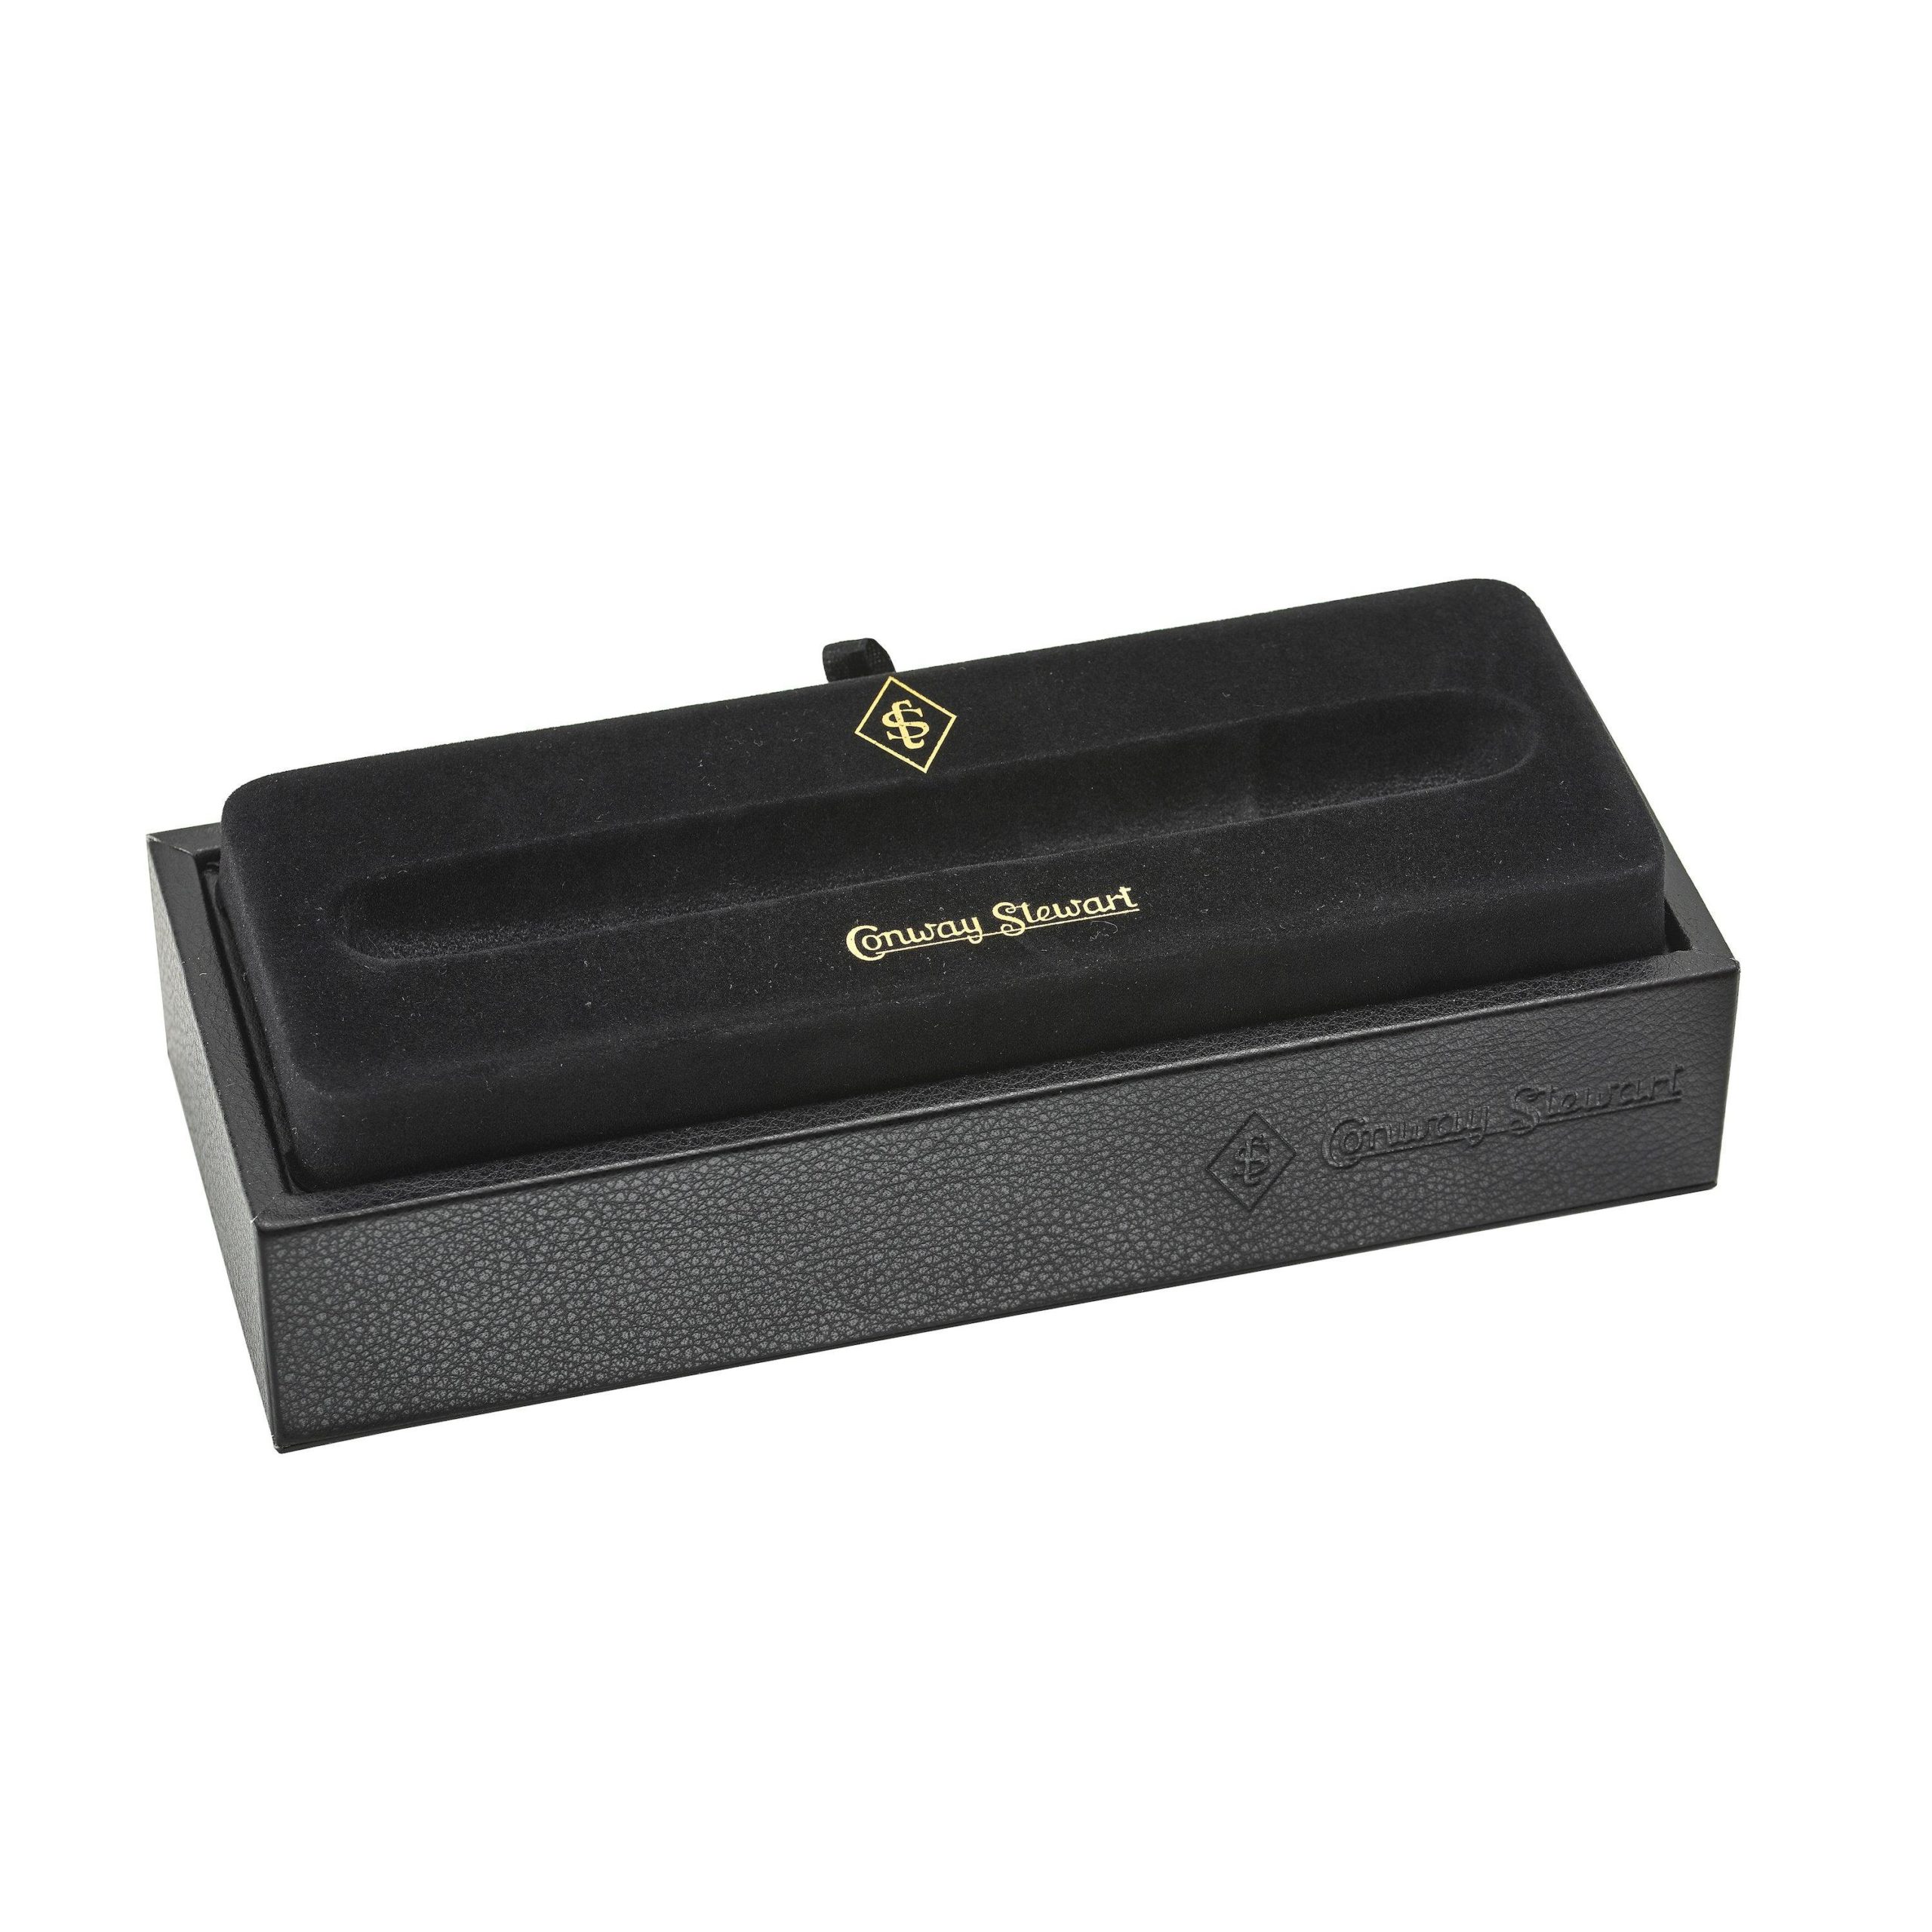 Conway Stewart Fountain Pen Box